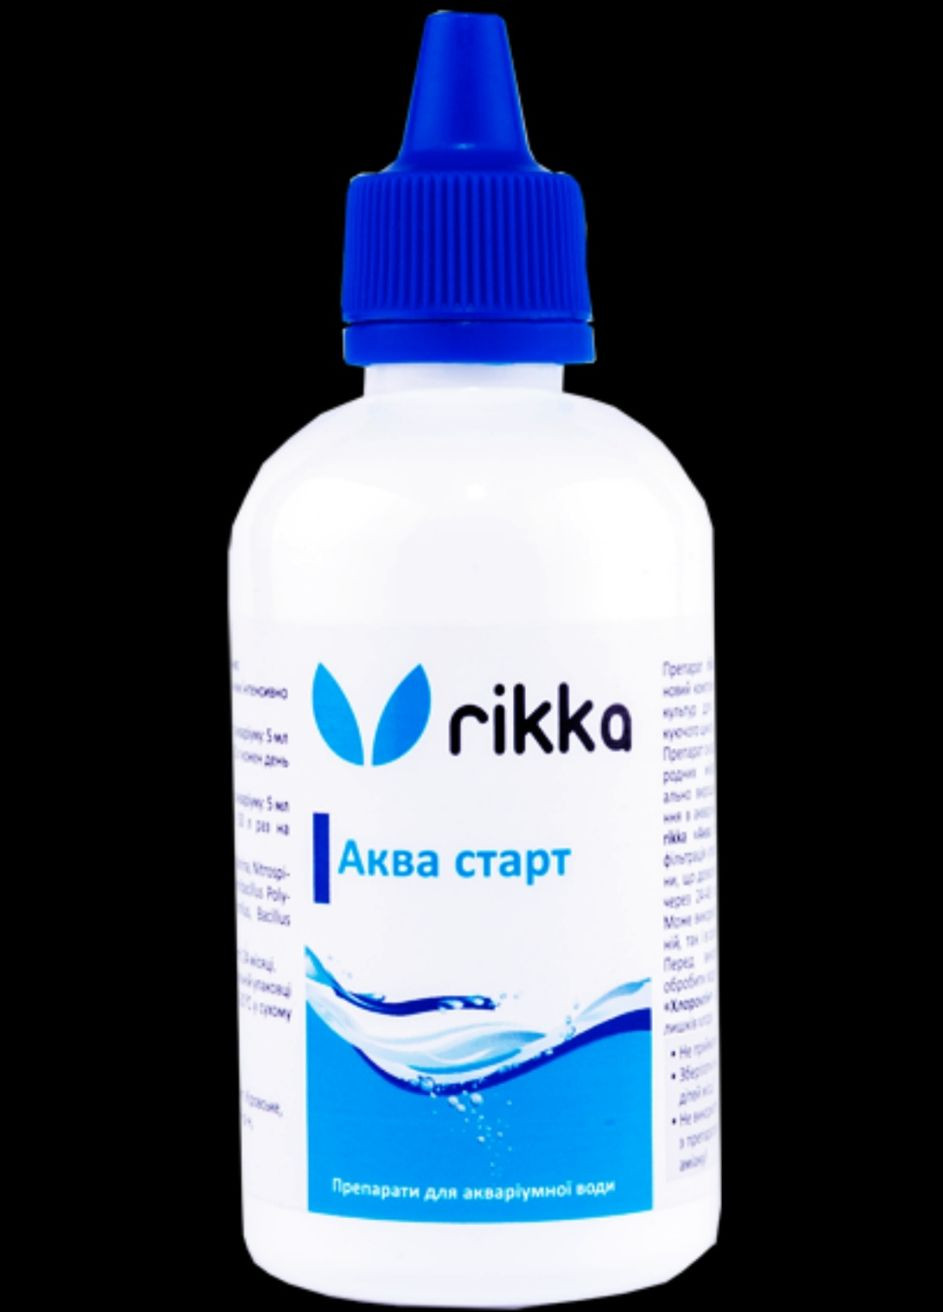 Аквариумные препараты для быстрого запуска аквариума - Комплекс Аква старт Rikka (275094827)